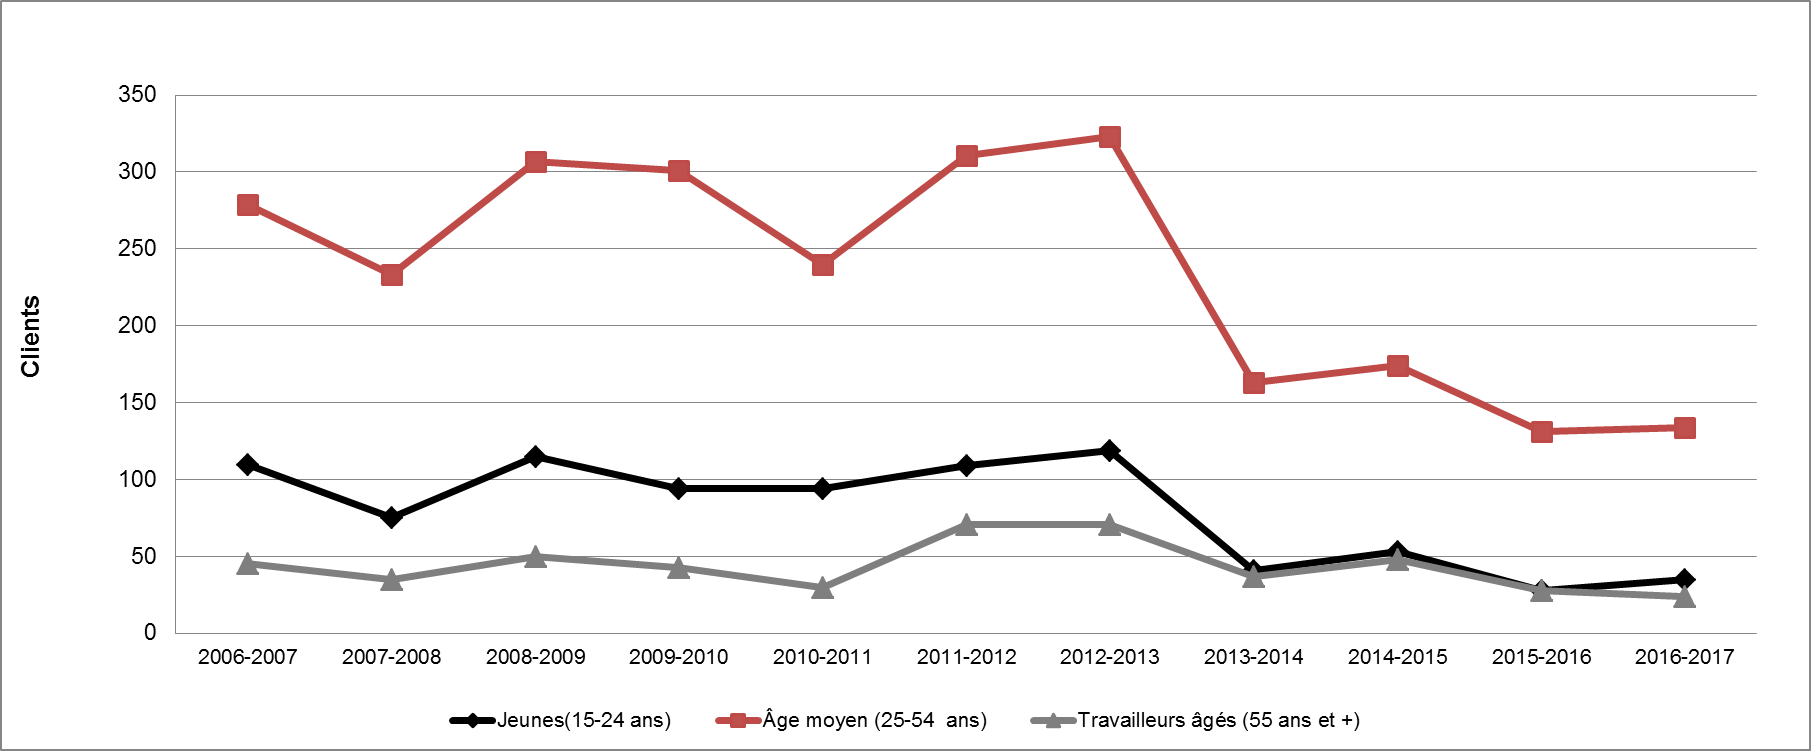 Graphique 41 - Répartition des clients des PEMS selon le groupe d'âge (2006-2007 à 2016-2017)